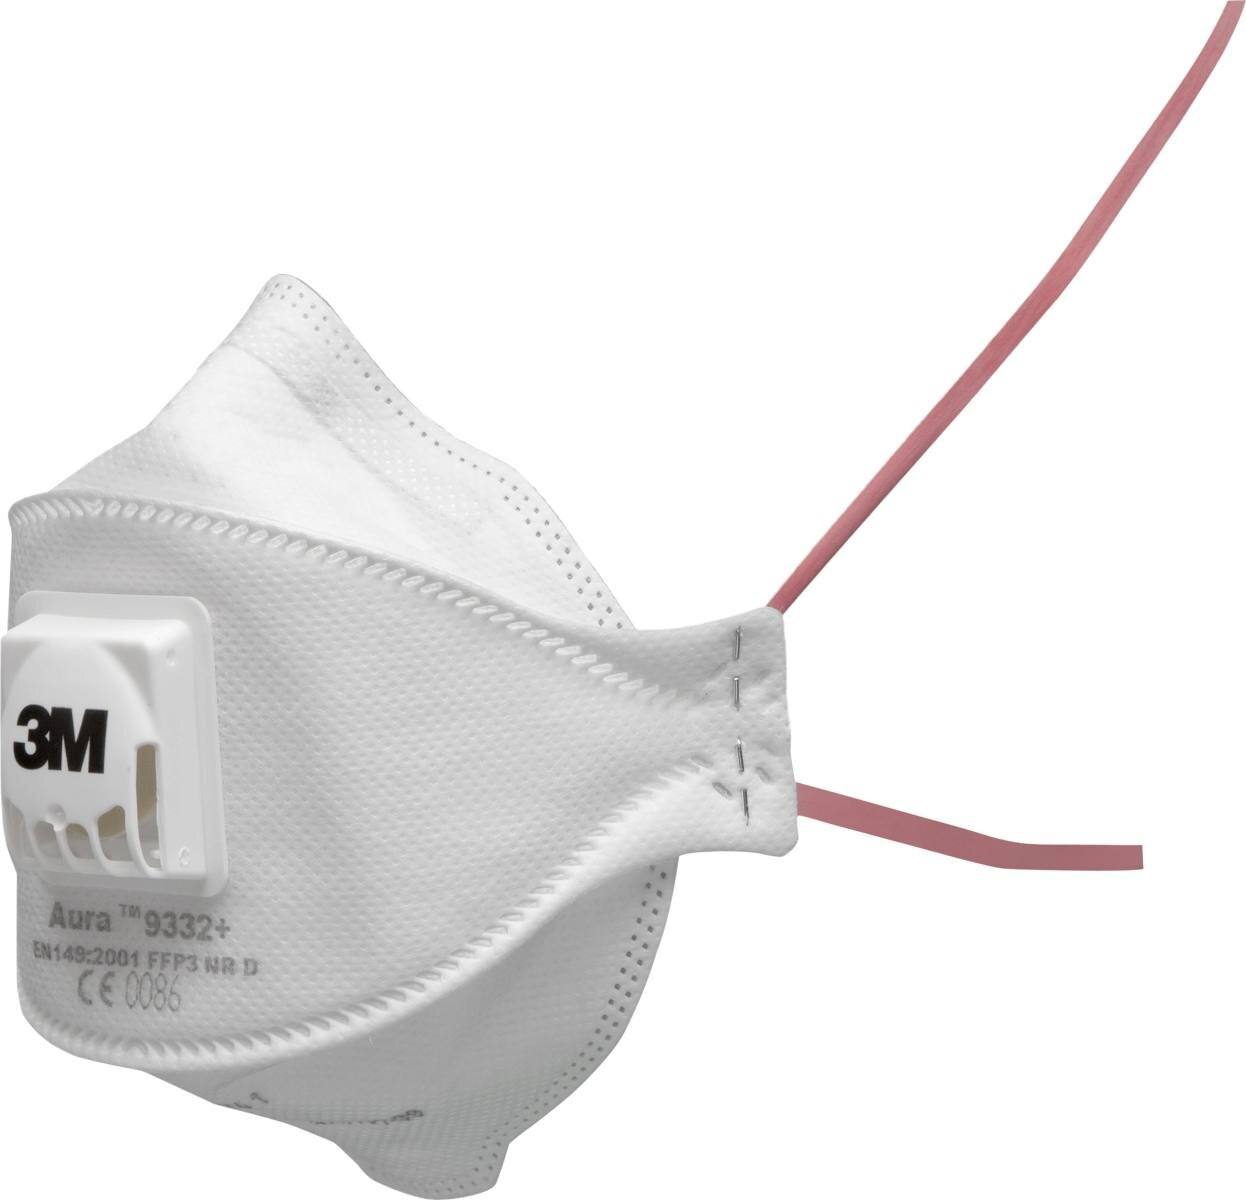 3M 9332+SV Aura Masque de protection respiratoire FFP3 avec valve d'expiration Cool-Flow, jusqu'à 30 fois la valeur limite (emballage individuel hygiénique), petit paquet